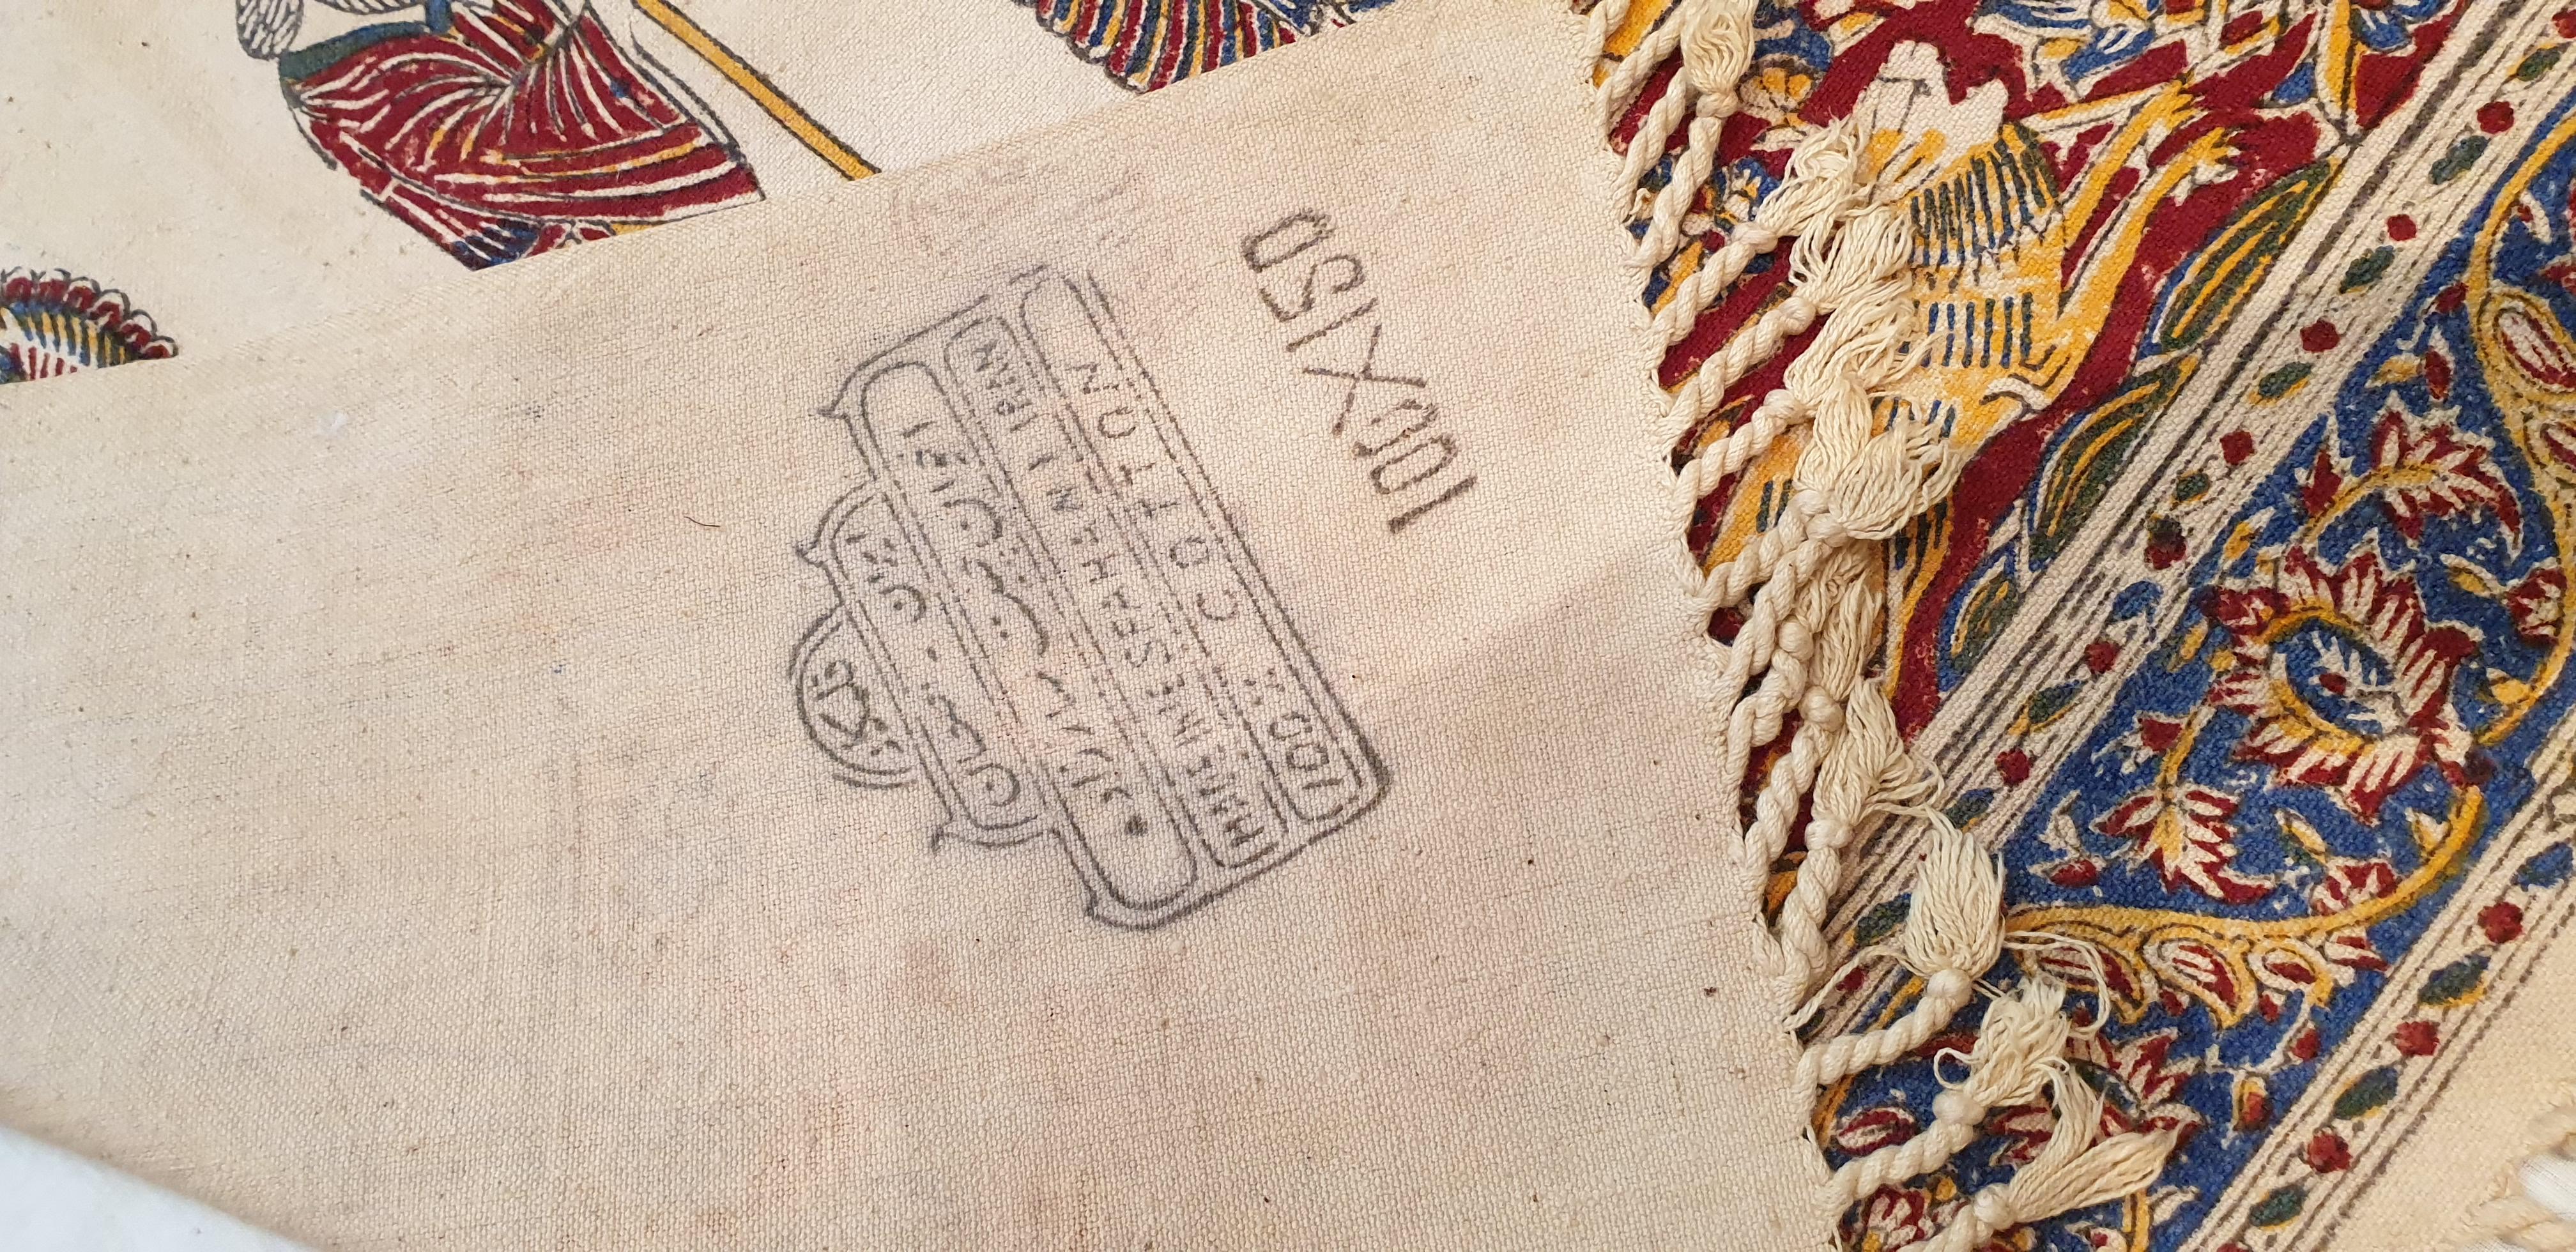 712 - Orientalisch bedrucktes Textil.